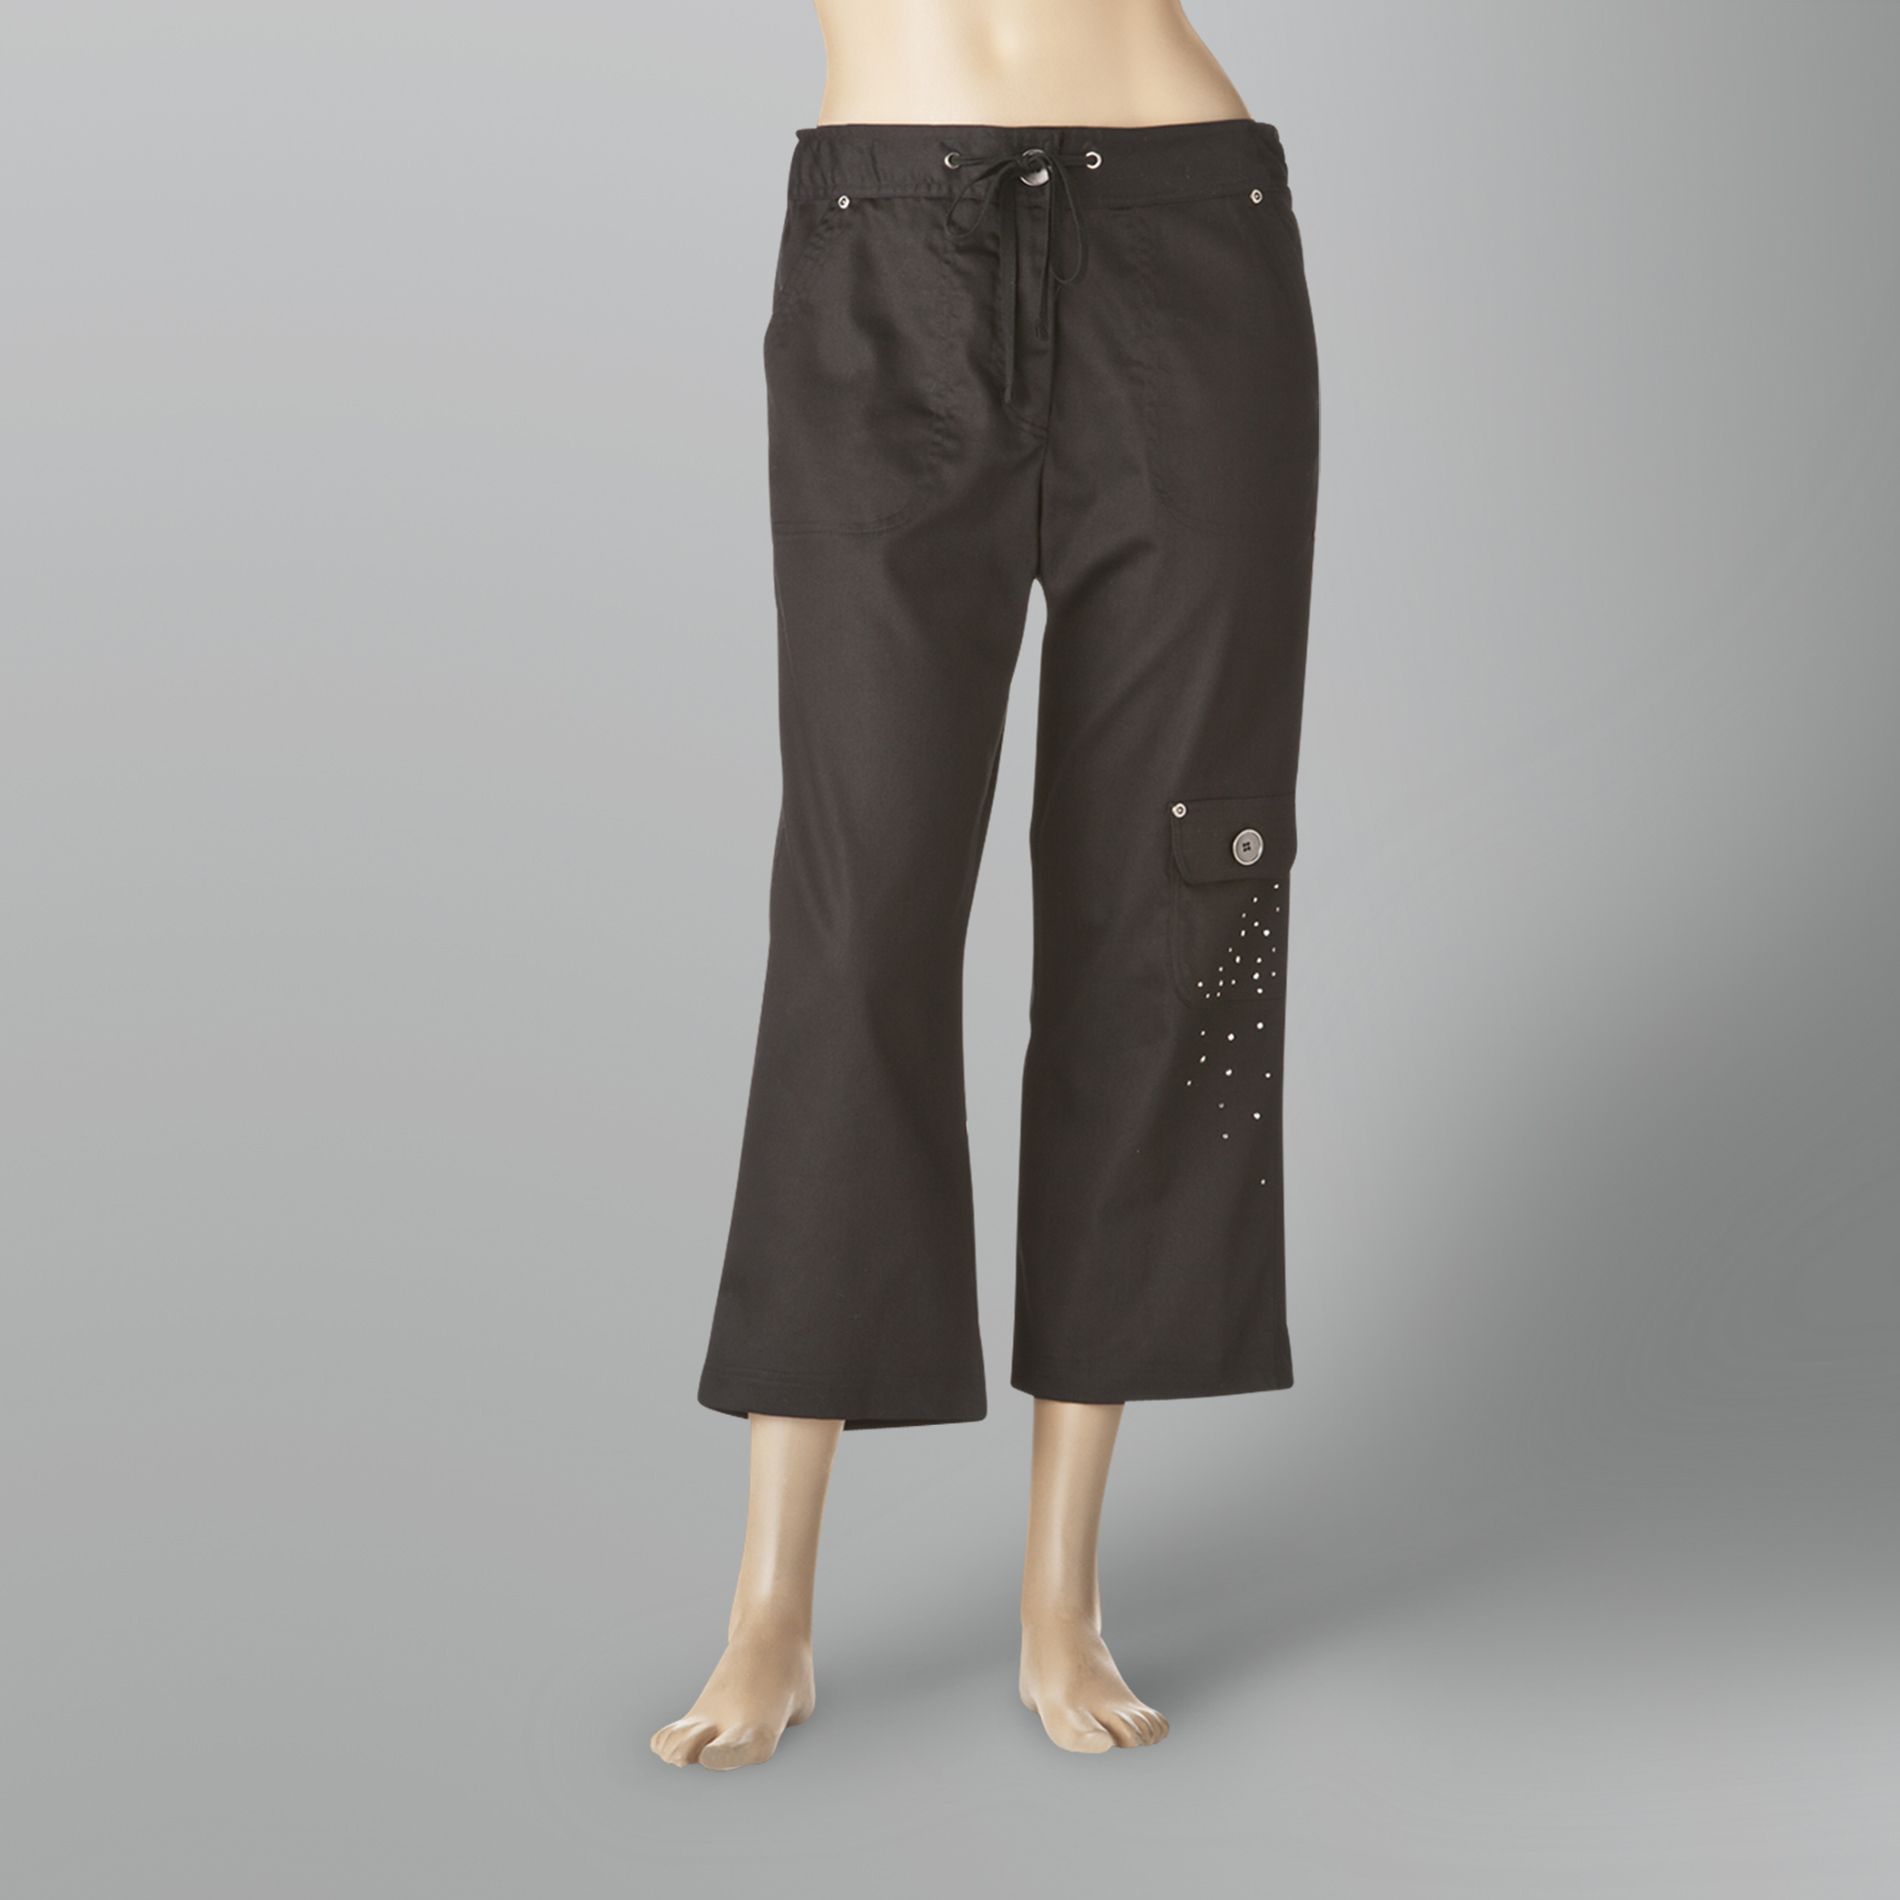 Sporte-Elle Inc. Women's Capri Pants Embellished Cargo